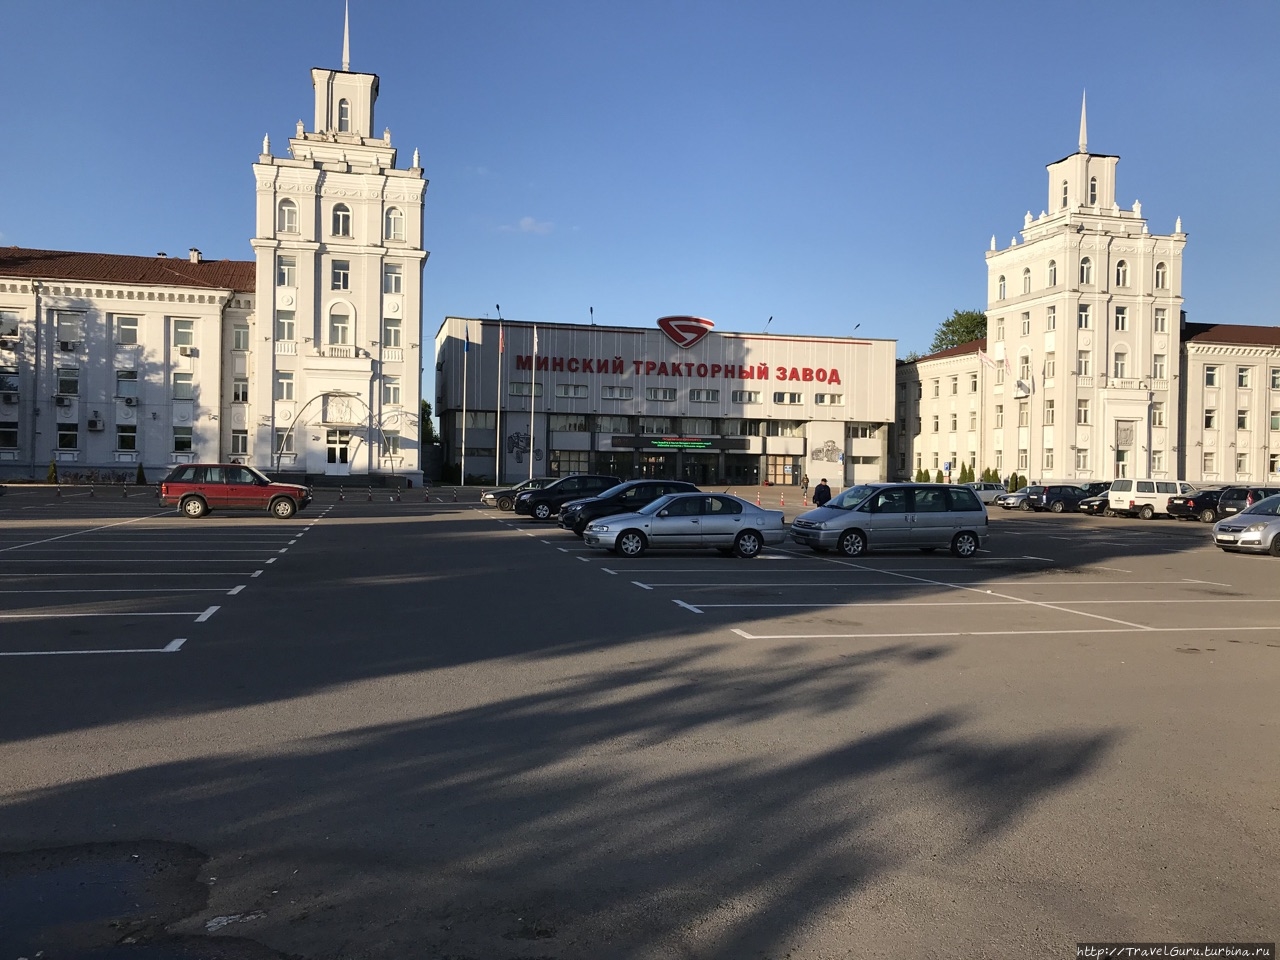 Центральная проходная Минского тракторного завода Минск, Беларусь